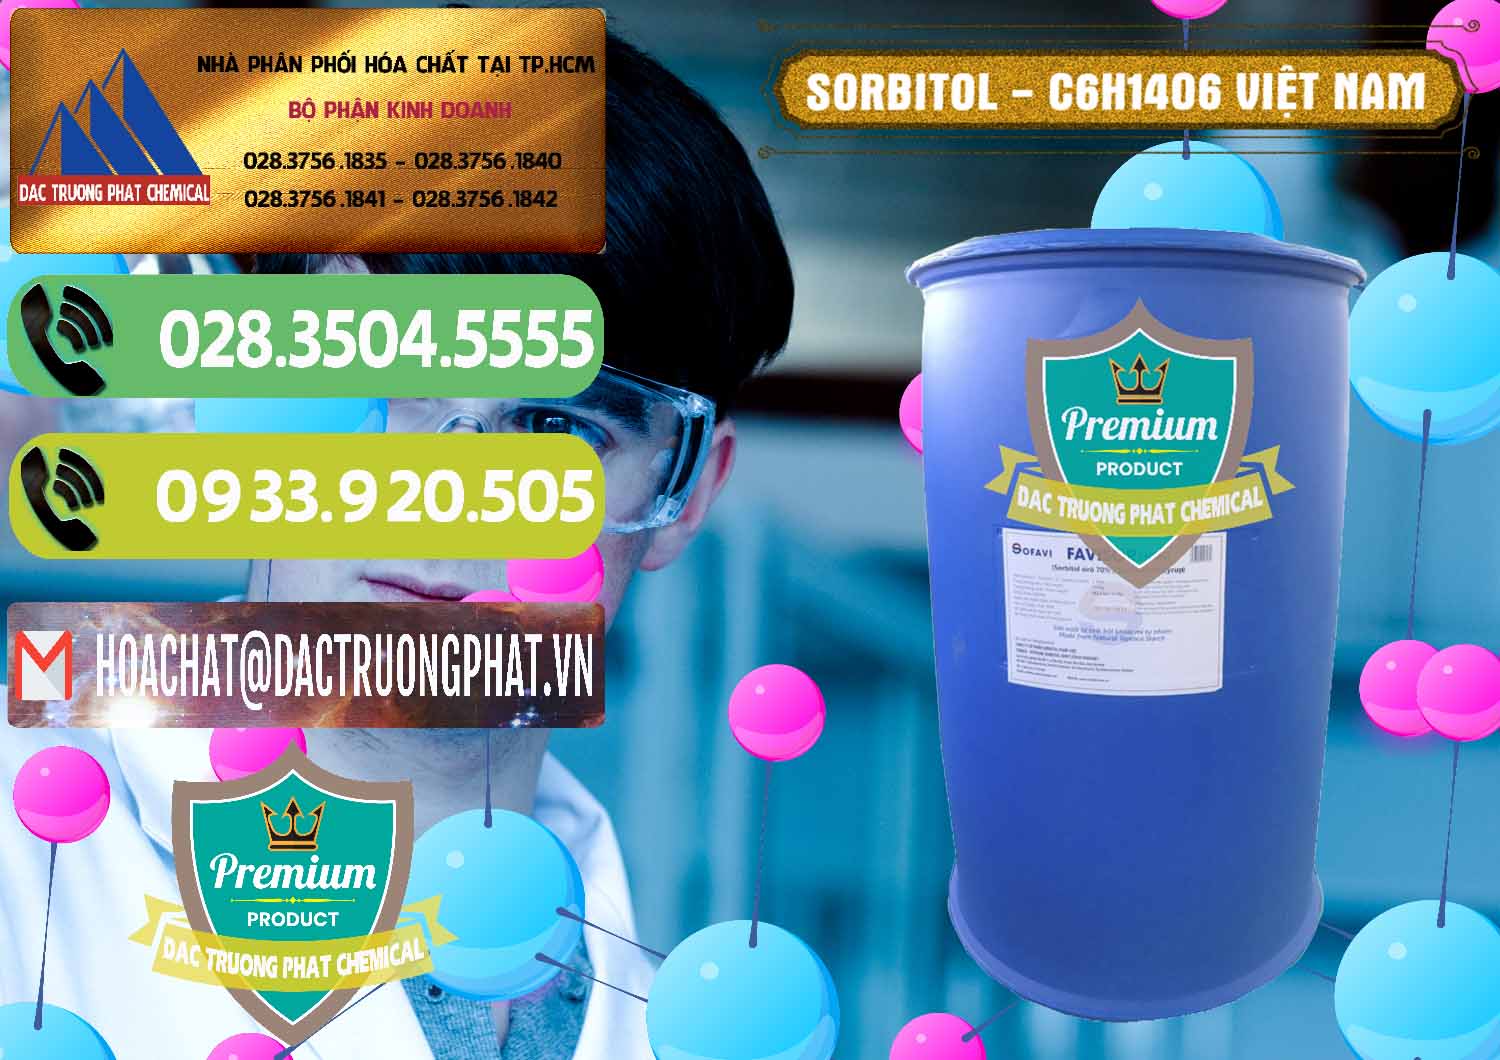 Kinh doanh & phân phối Sorbitol - C6H14O6 Lỏng 70% Food Grade Việt Nam - 0438 - Nơi cung cấp và phân phối hóa chất tại TP.HCM - hoachatmientay.vn